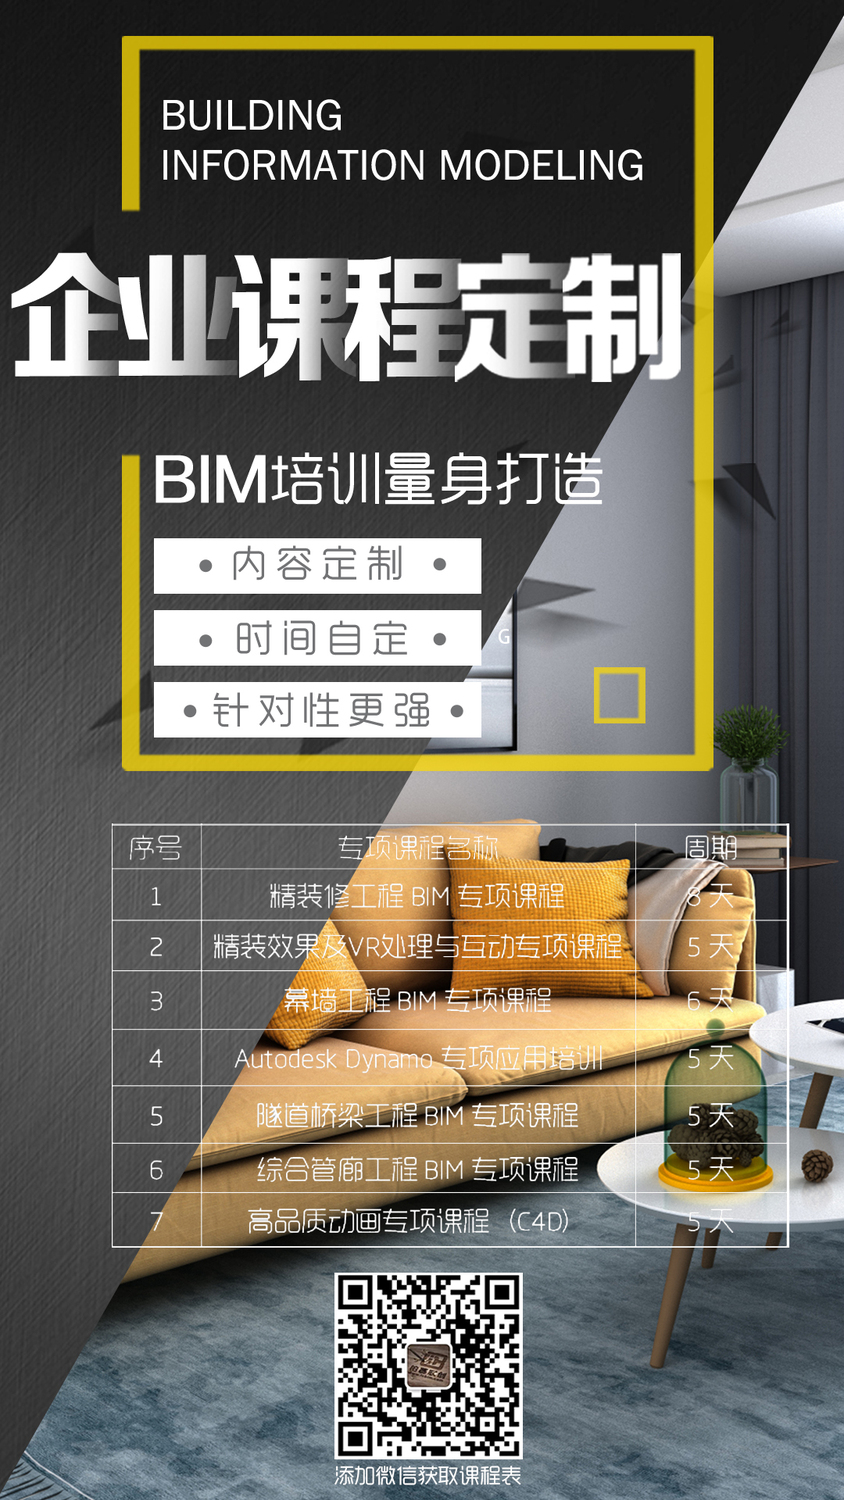 企業BIM定制培訓海報-BIM每日一技小編-2.jpg